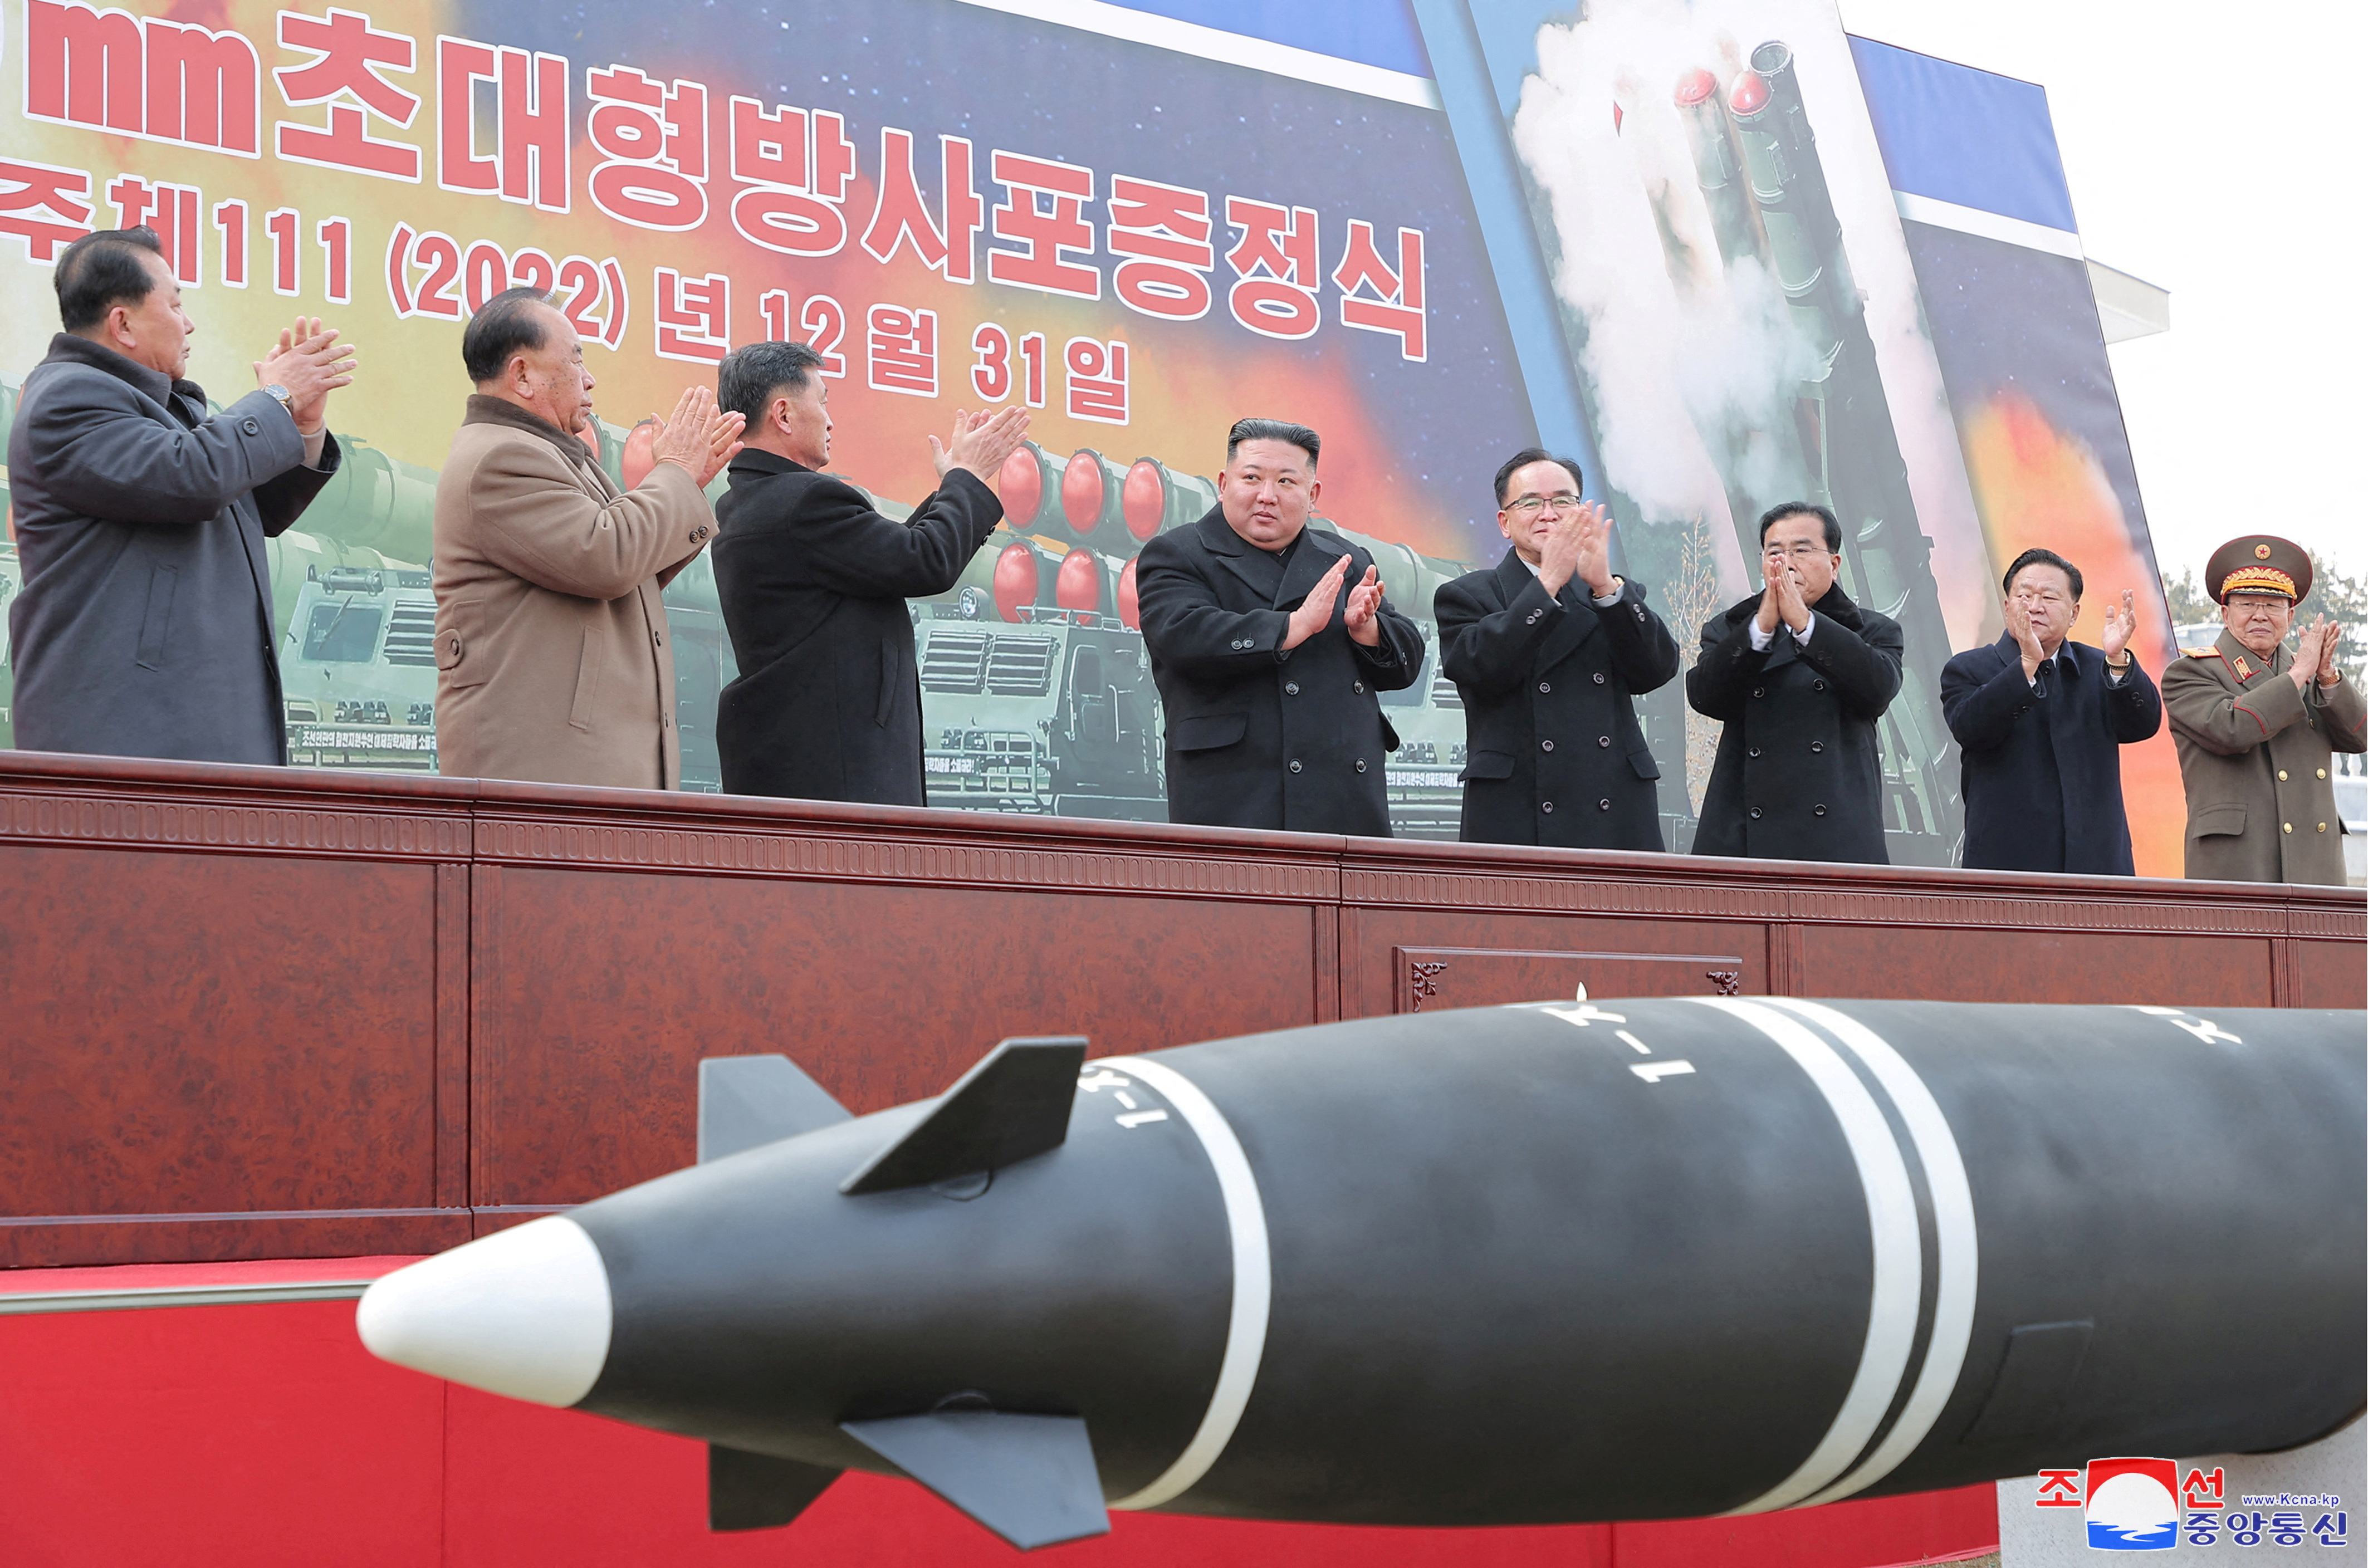 El dictador norcoreano Kim Jong-un advirtió este primero de enero que aumentará “exponencialmente” la producción de ojivas nucleares y construirá misiles balísticos intercontinentales más poderosos. (KCNA via REUTERS)